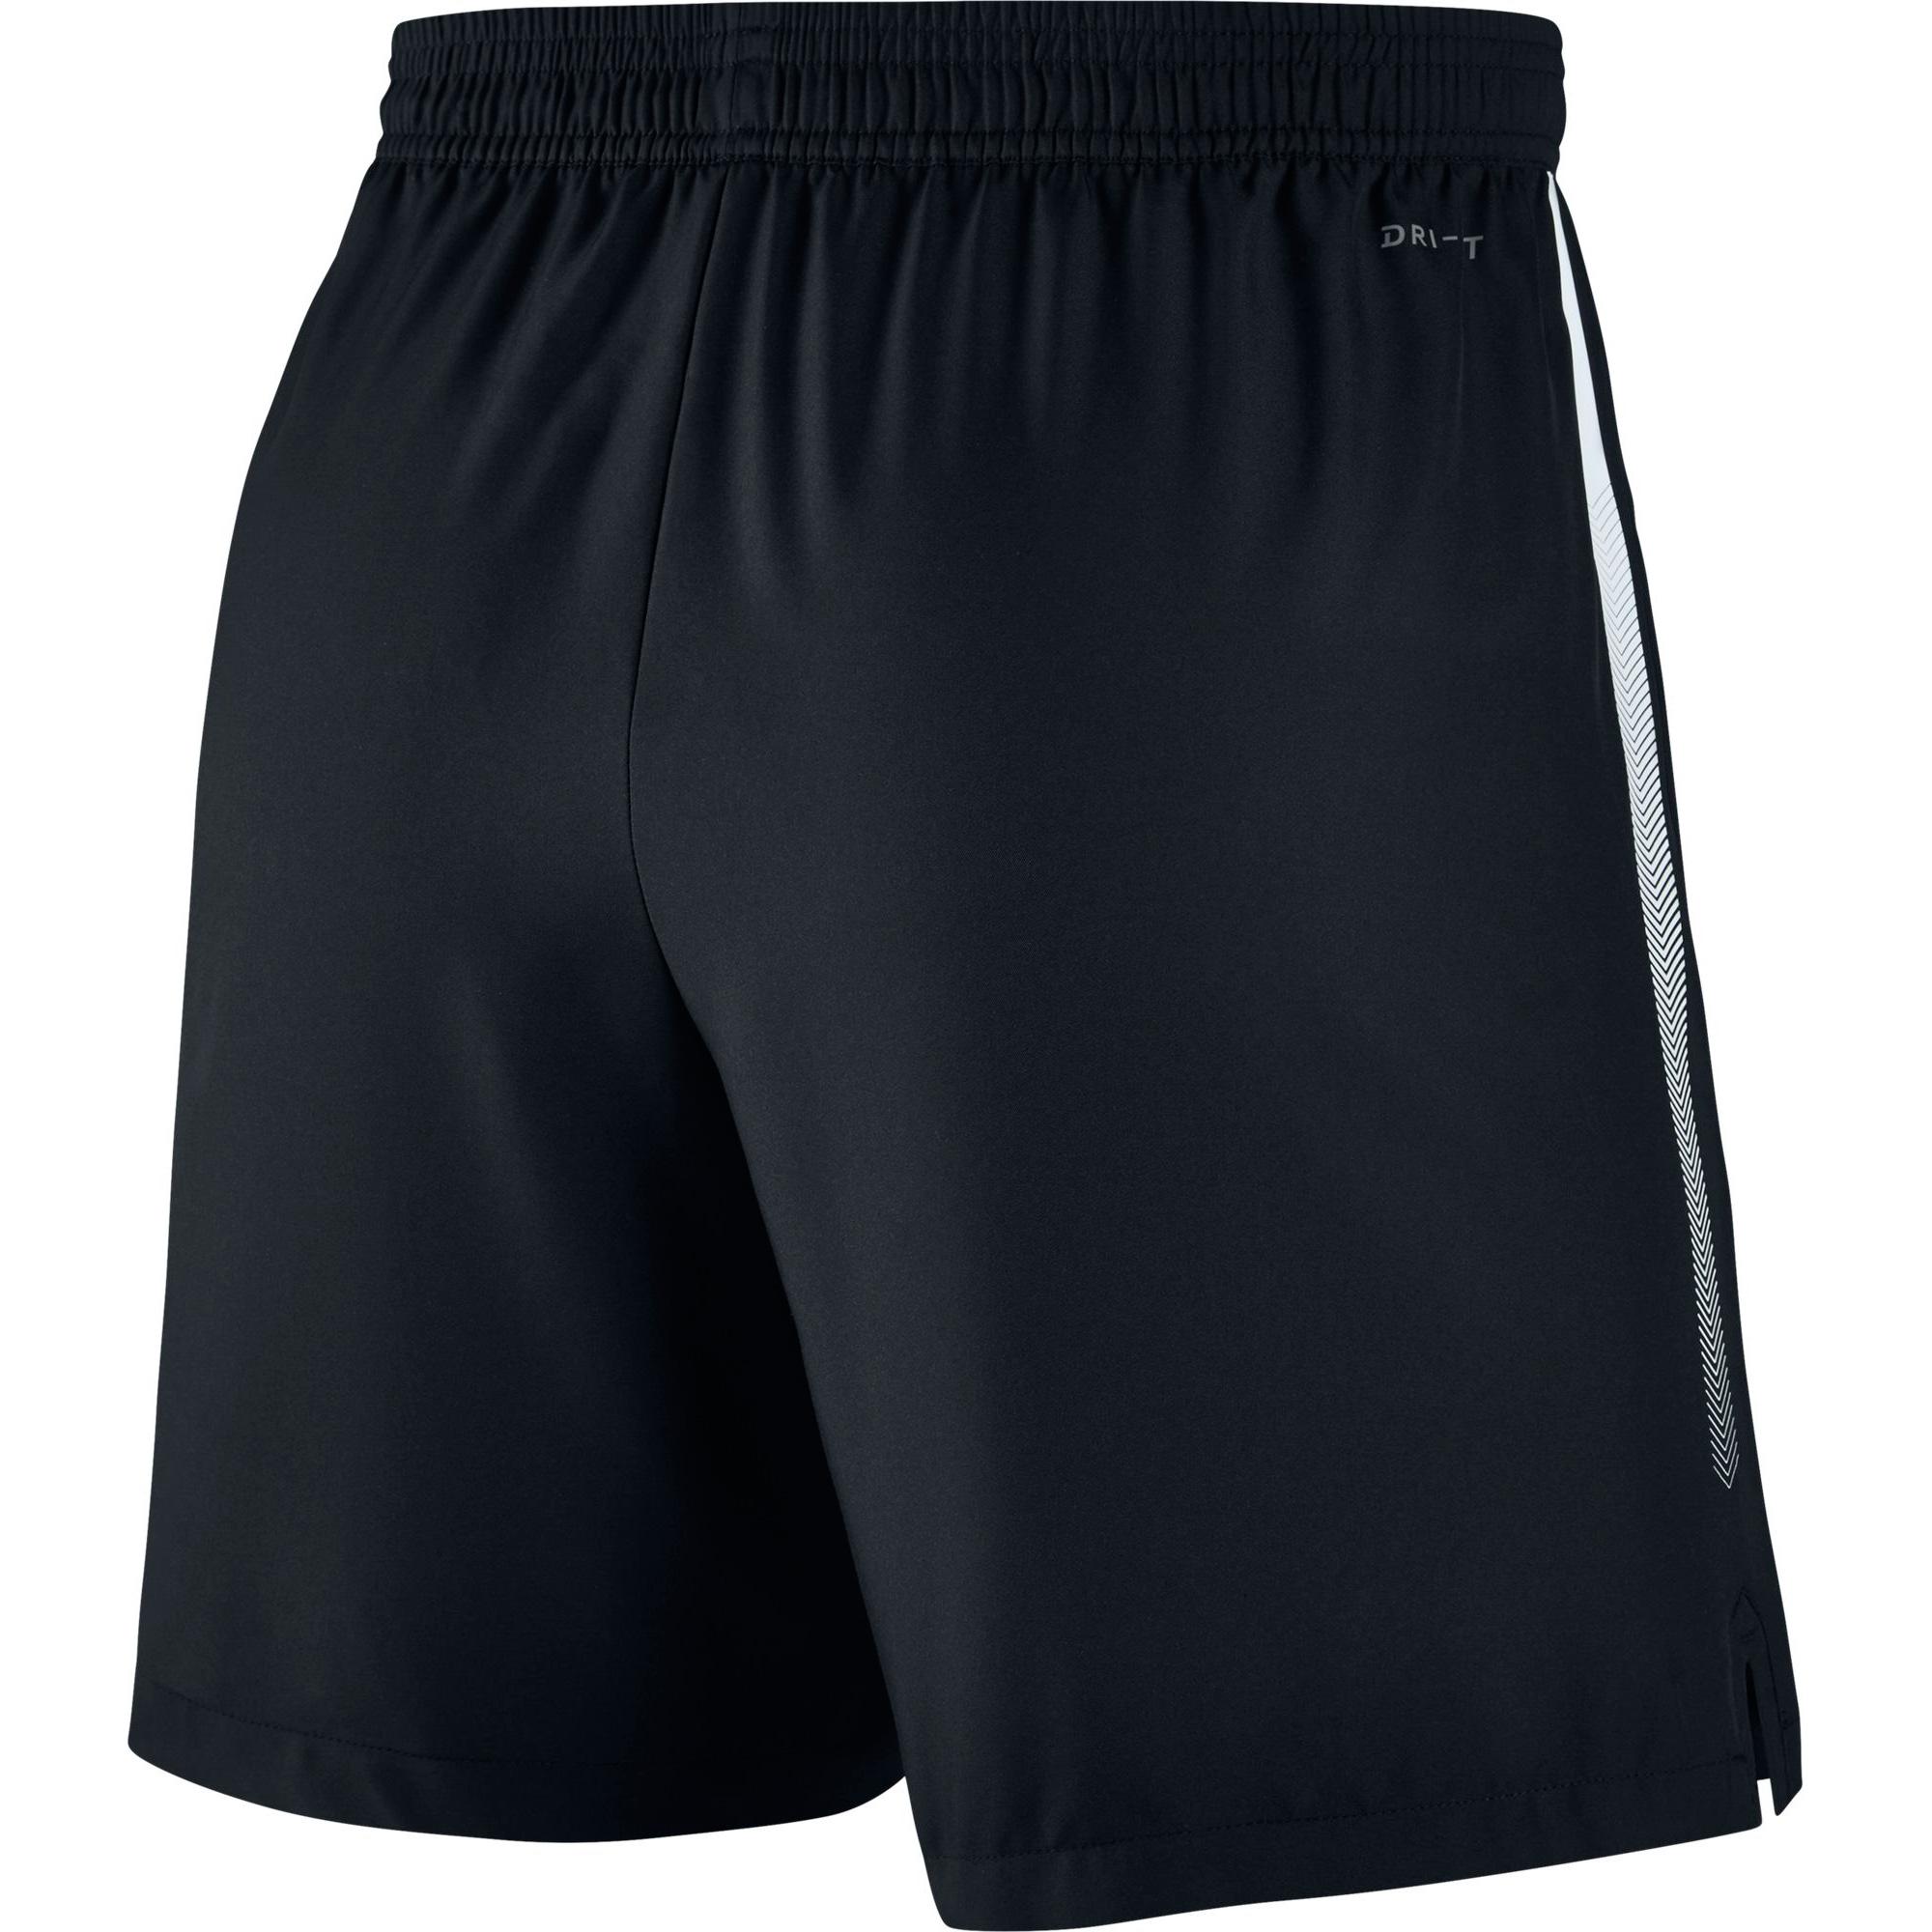 Nike Mens Dry 7 Inch Tennis Shorts - Black - Tennisnuts.com